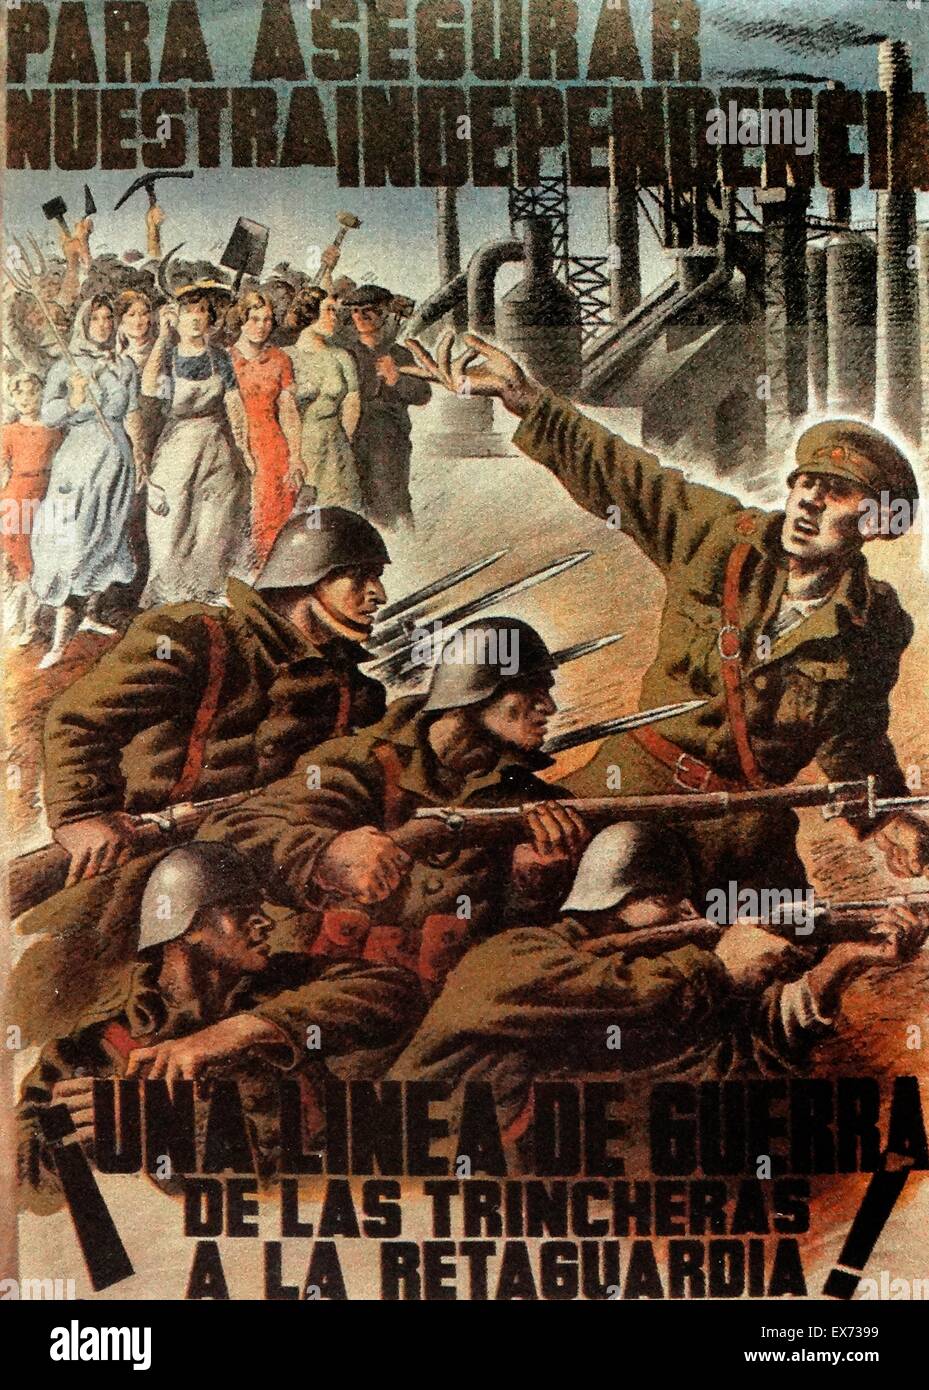 Para Asegurar Nuestra Independencia (um unsere Unabhängigkeit zu gewährleisten) republikanischen Propagandaplakat aus dem spanischen Bürgerkrieg Stockfoto